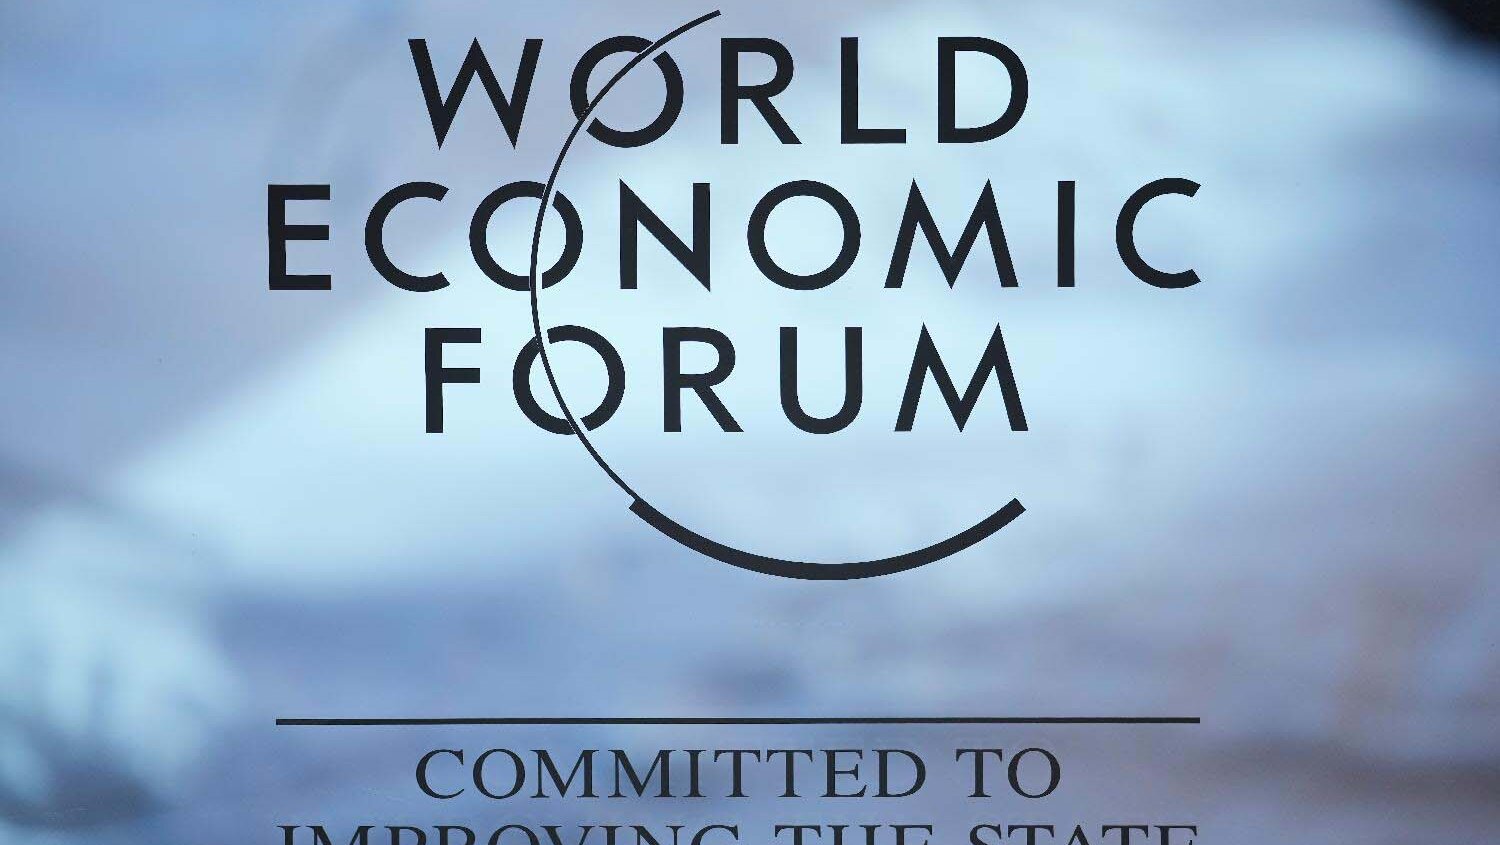 Vučić u Davosu: Da li je Svetski ekonomski forum značajan za Srbiju i o čemu će se razgovarati na skupu moćnika? 2